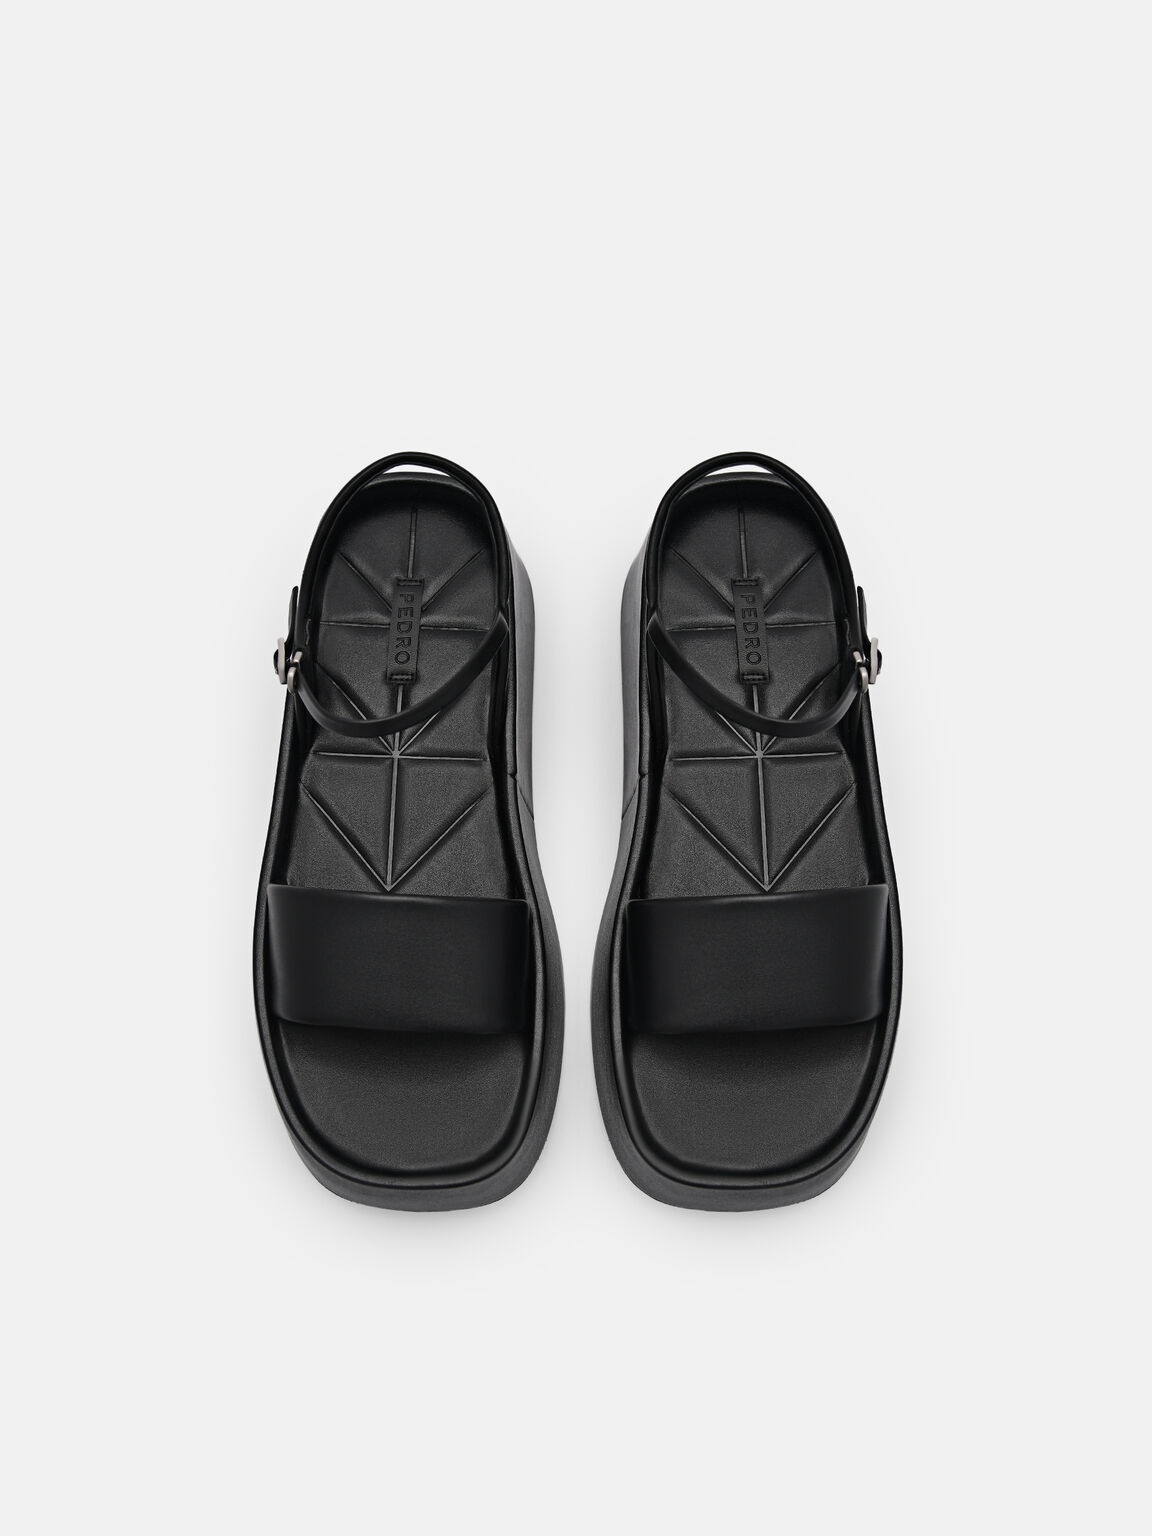 Aster Platform Sandals, Black